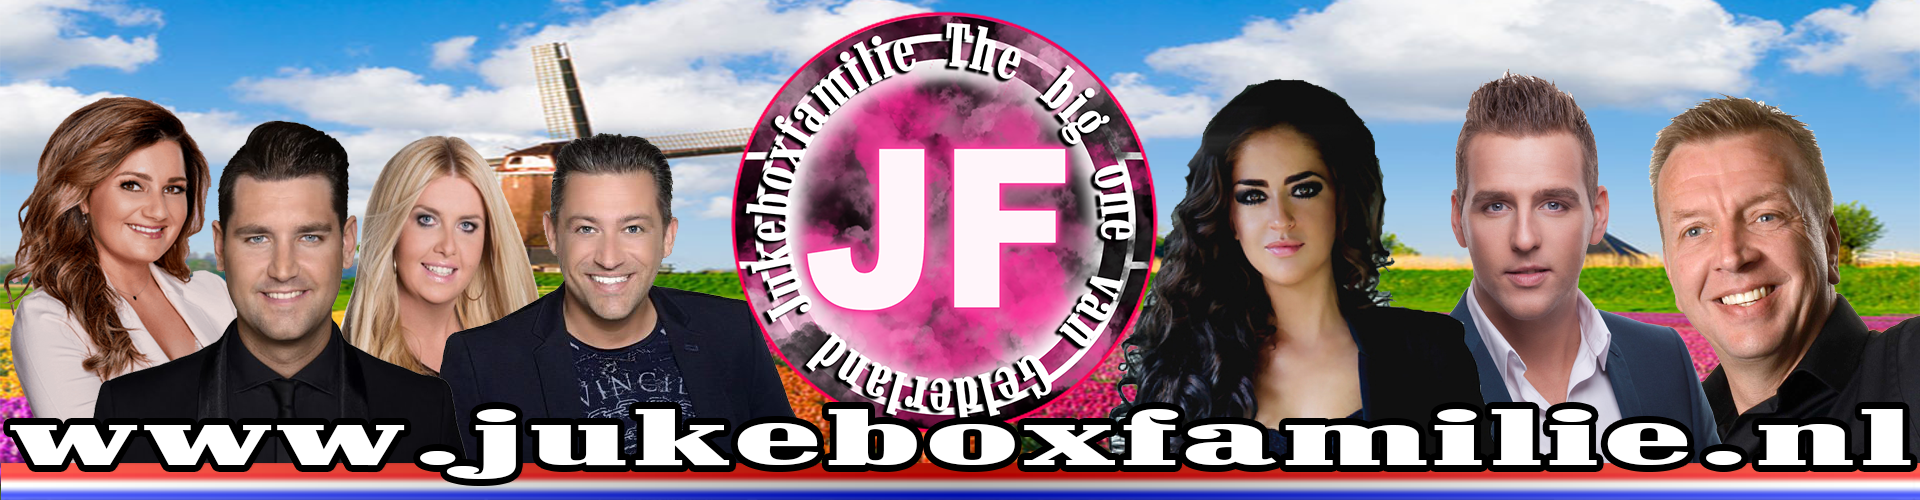 JUKEBOXFAMILIE | The Big one van Gelderland 